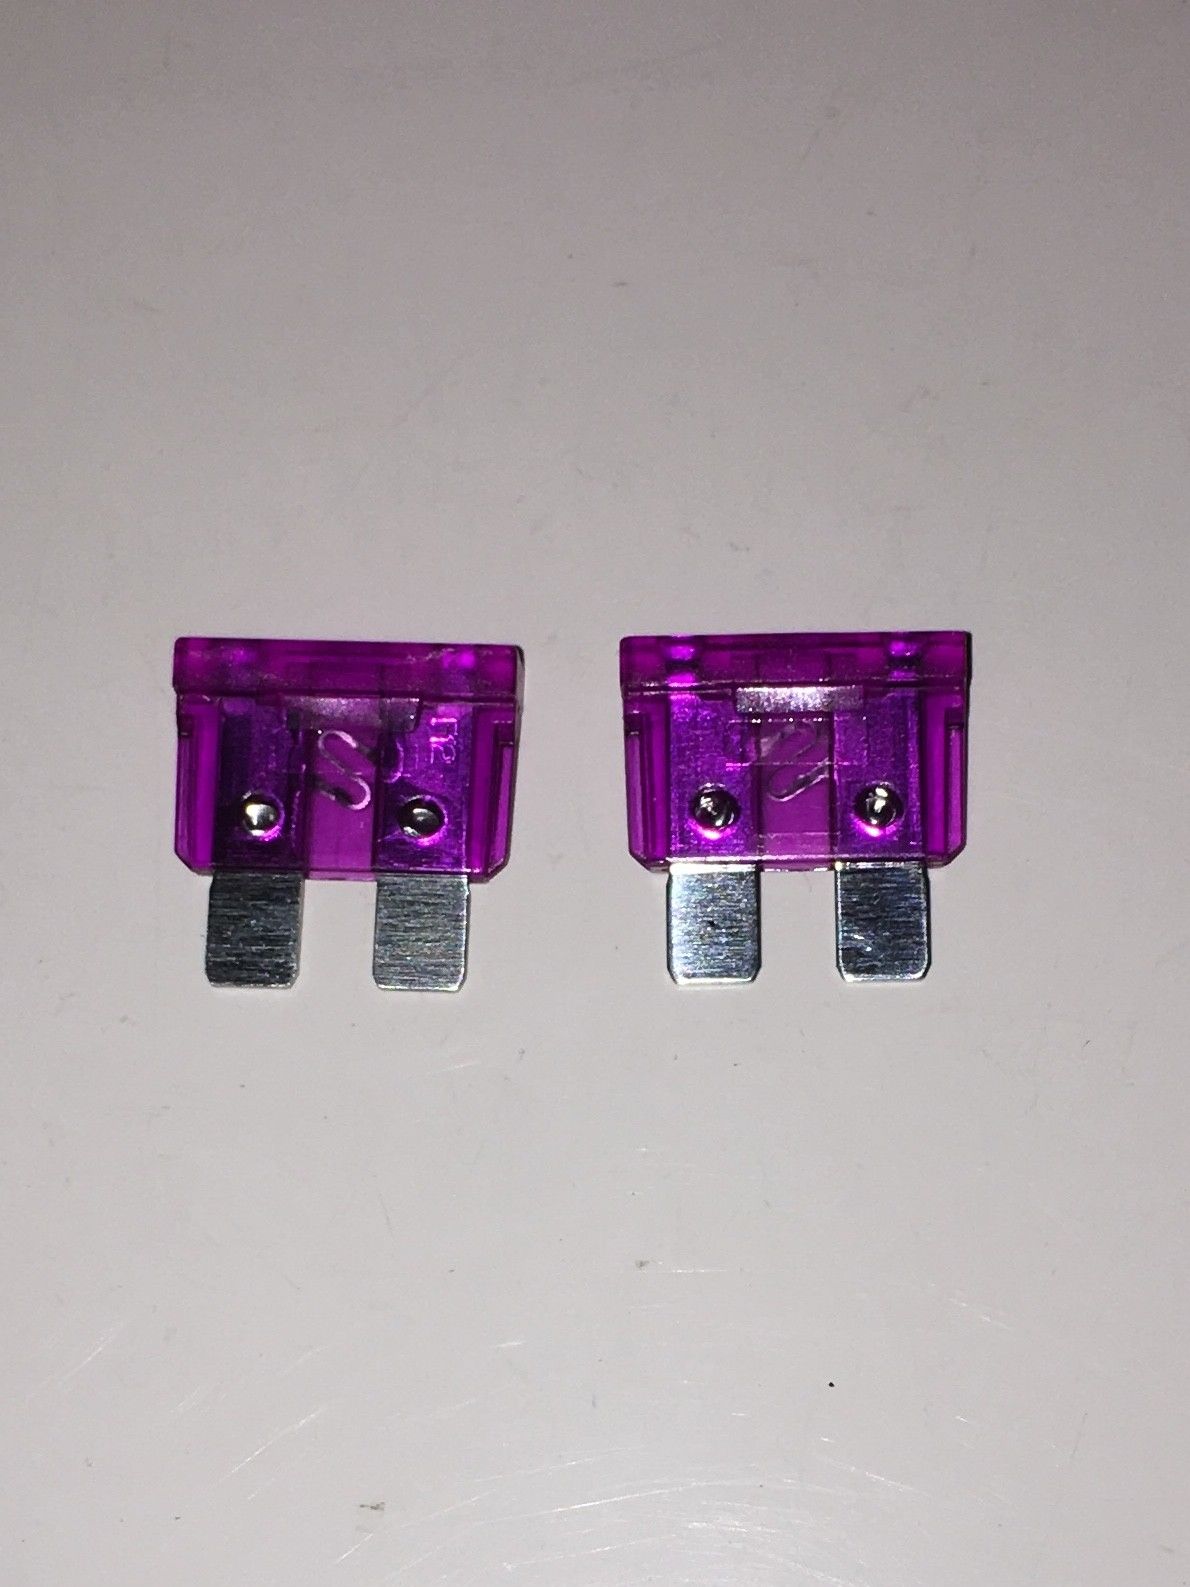 Thetford Cassette Toilet 3 amp blade fuses X 2  – 21766 Thetford